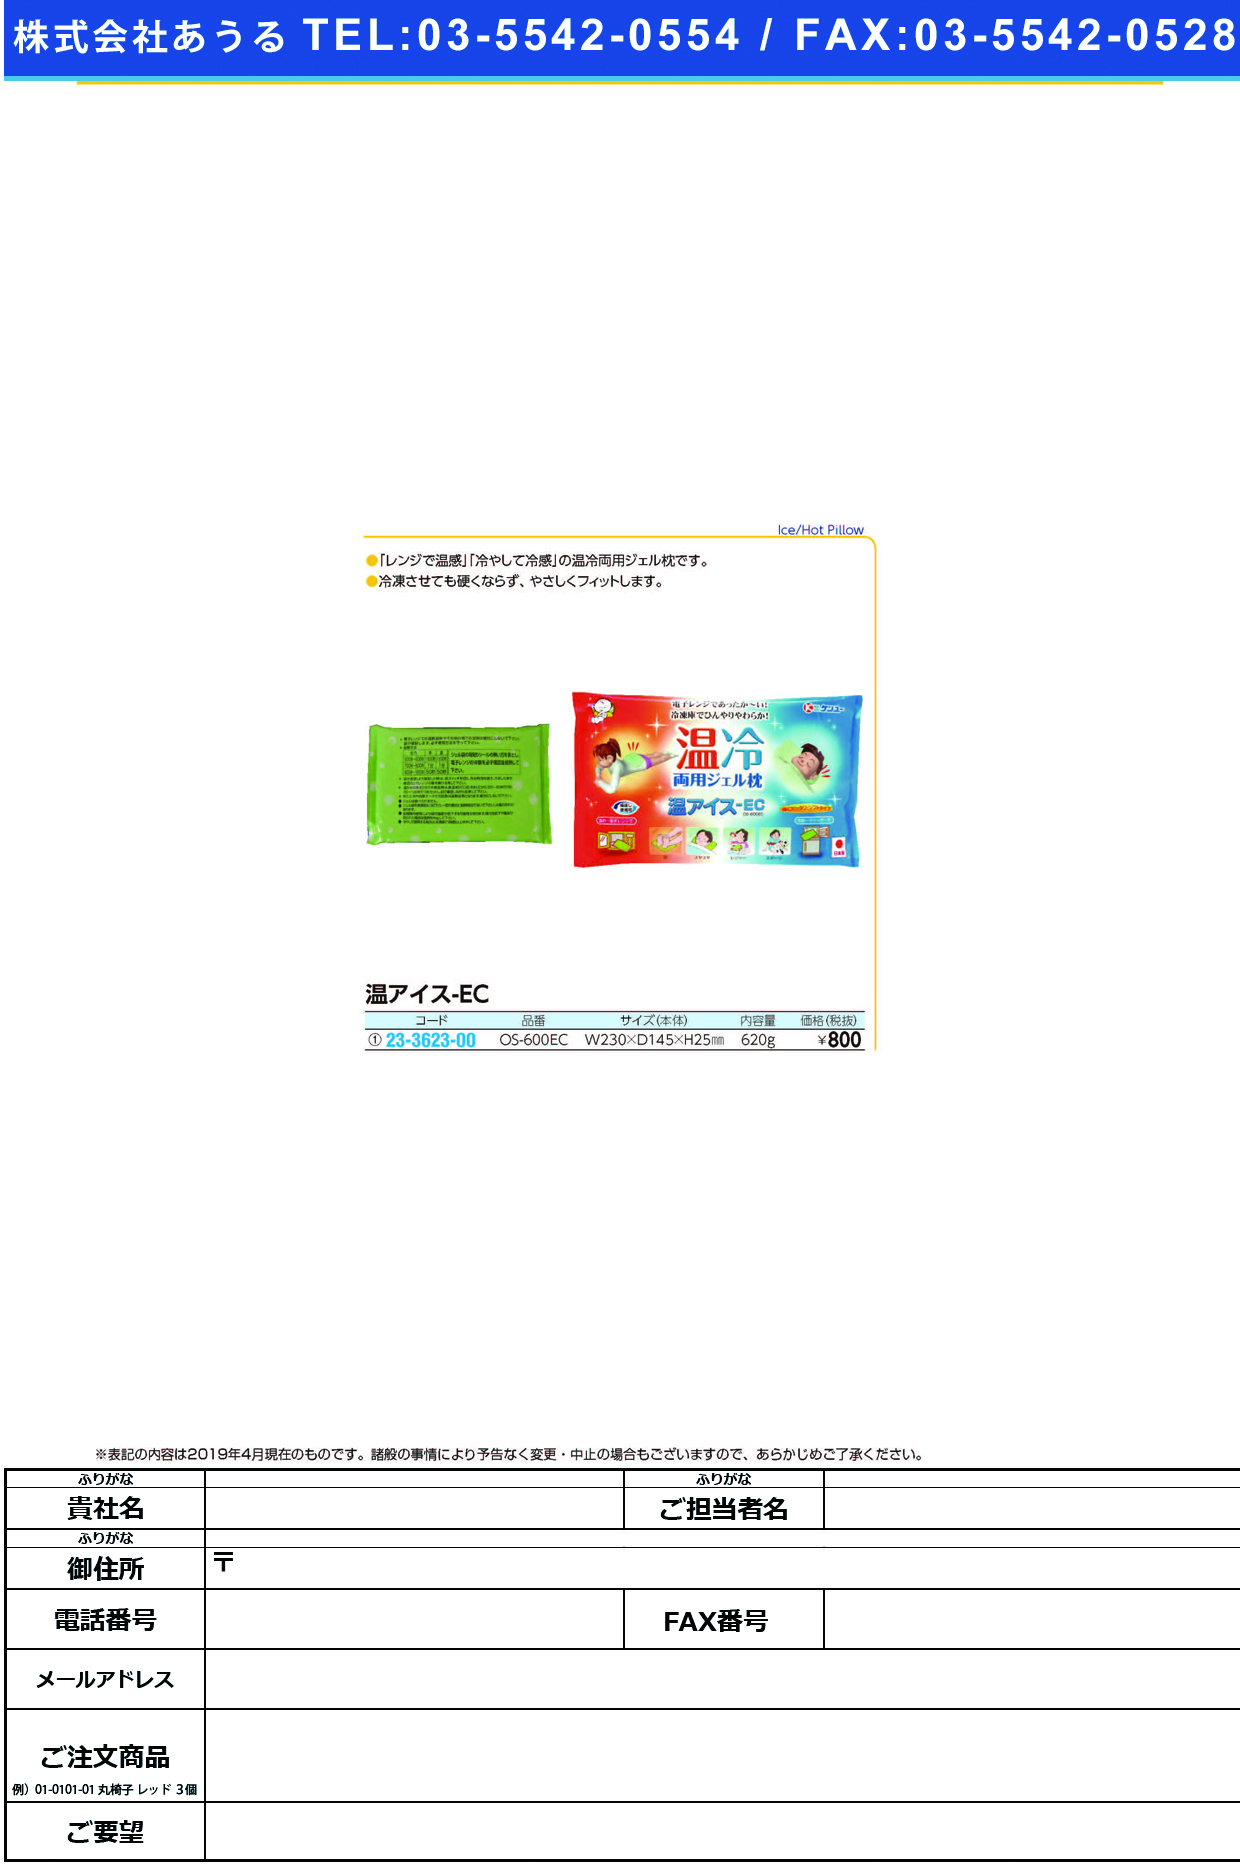 (23-3623-00)ケンユー温アイスＥＣ OS-600EC ｹﾝﾕｰｵﾝｱｲｽEC【1個単位】【2019年カタログ商品】